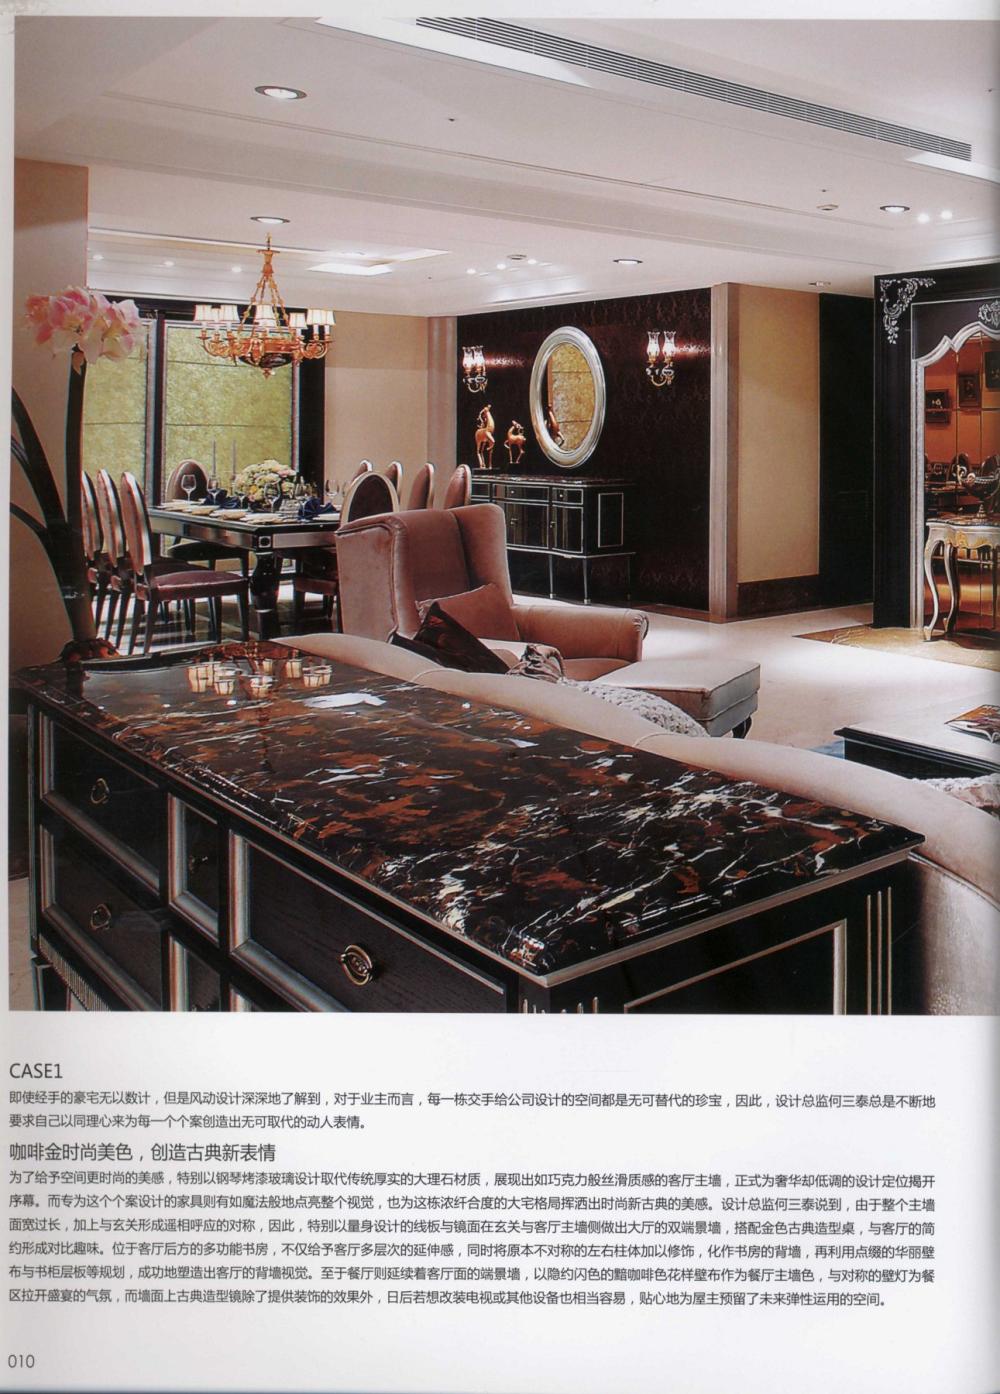 25 台湾名门府邸 taiwans luxury mansion_13671144854 0010.jpg